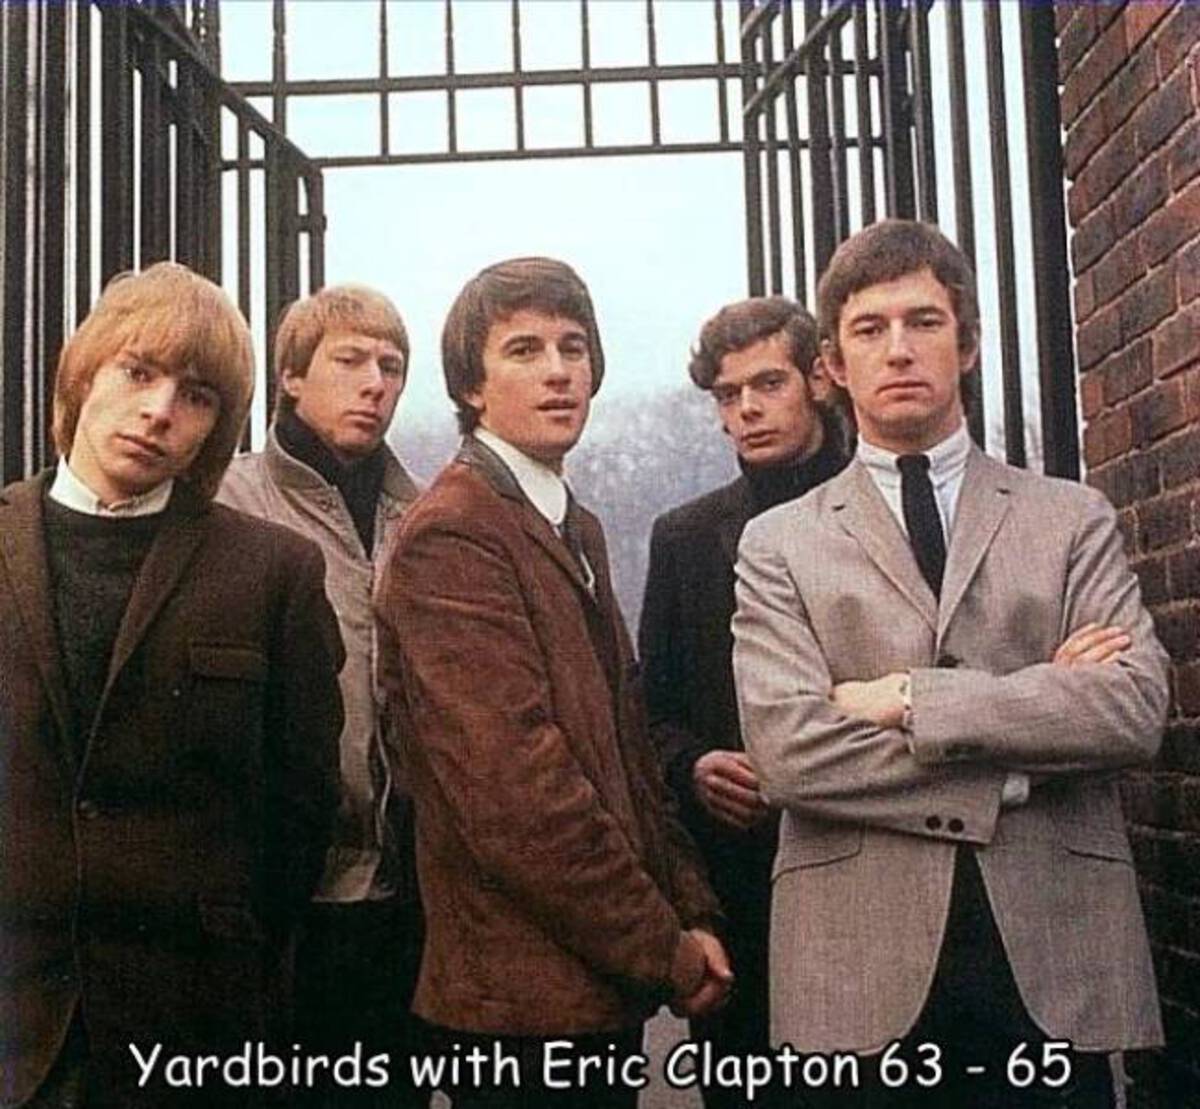 yardbirds london time - Yardbirds with Eric Clapton 63 65